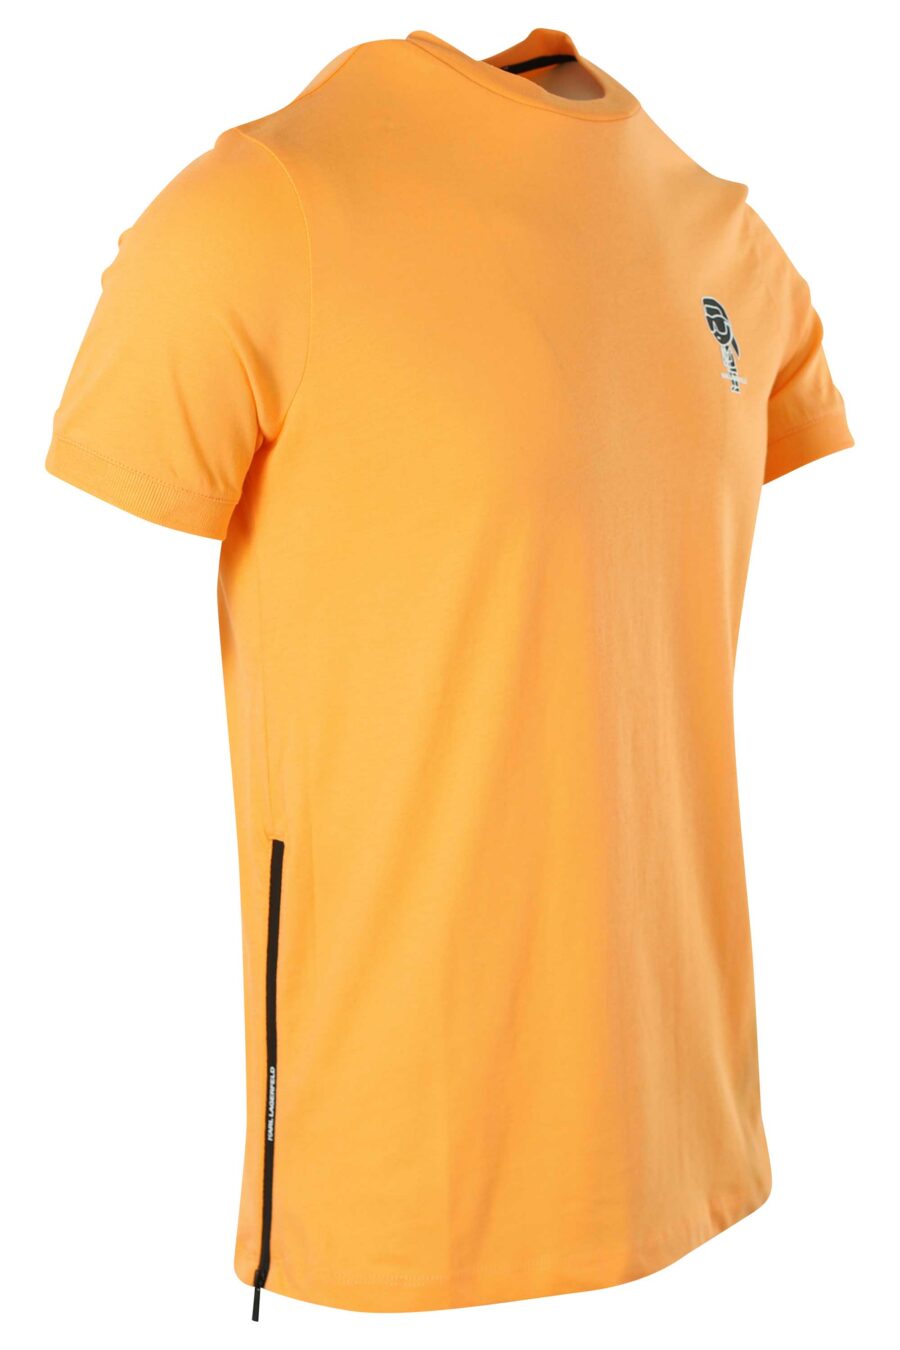 Camiseta naranja con minilogo blanco - 014769666 2